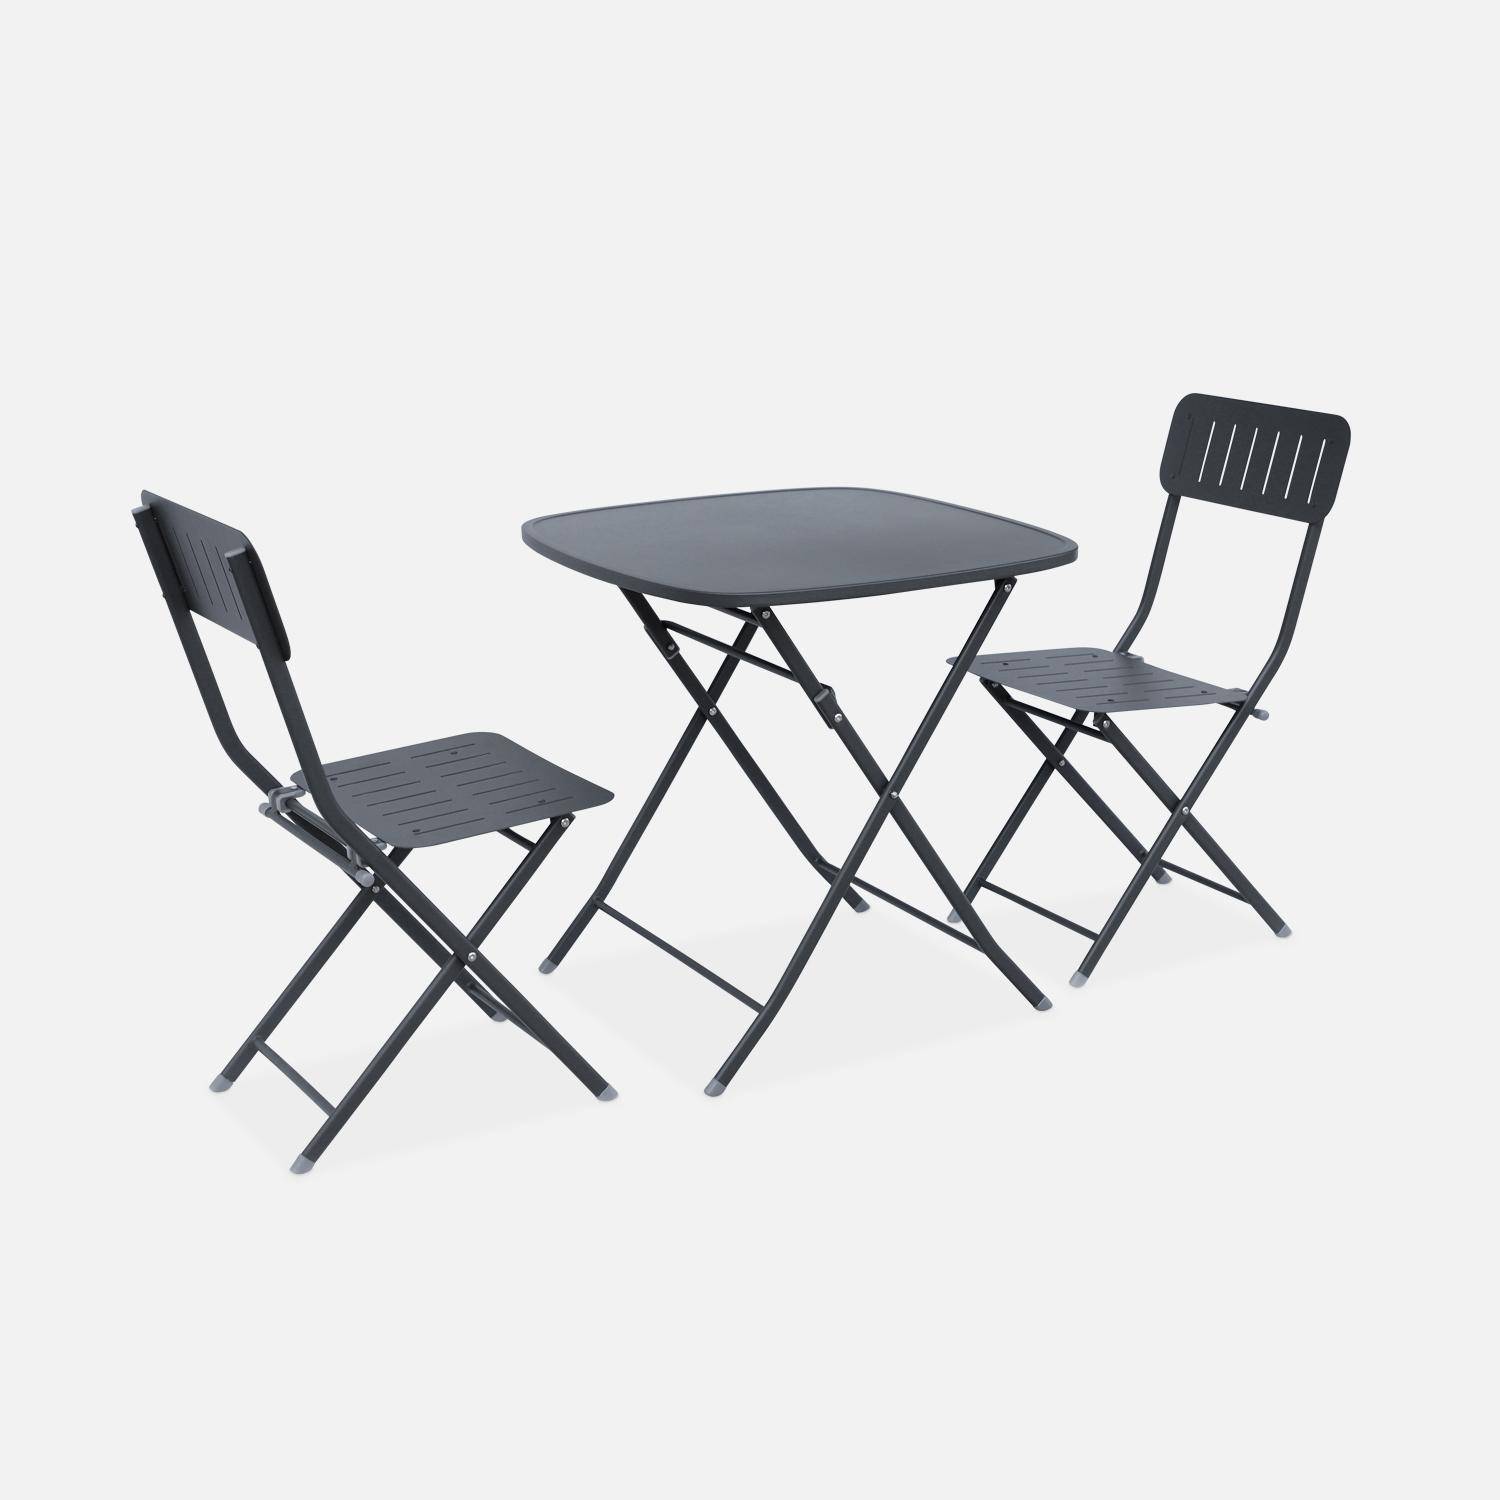 Klappbarer Gartentisch vom Typ Bistro anthrazit mit 2 klappbaren Stühlen aus robustem verzinktem Stahl - Marina Photo3